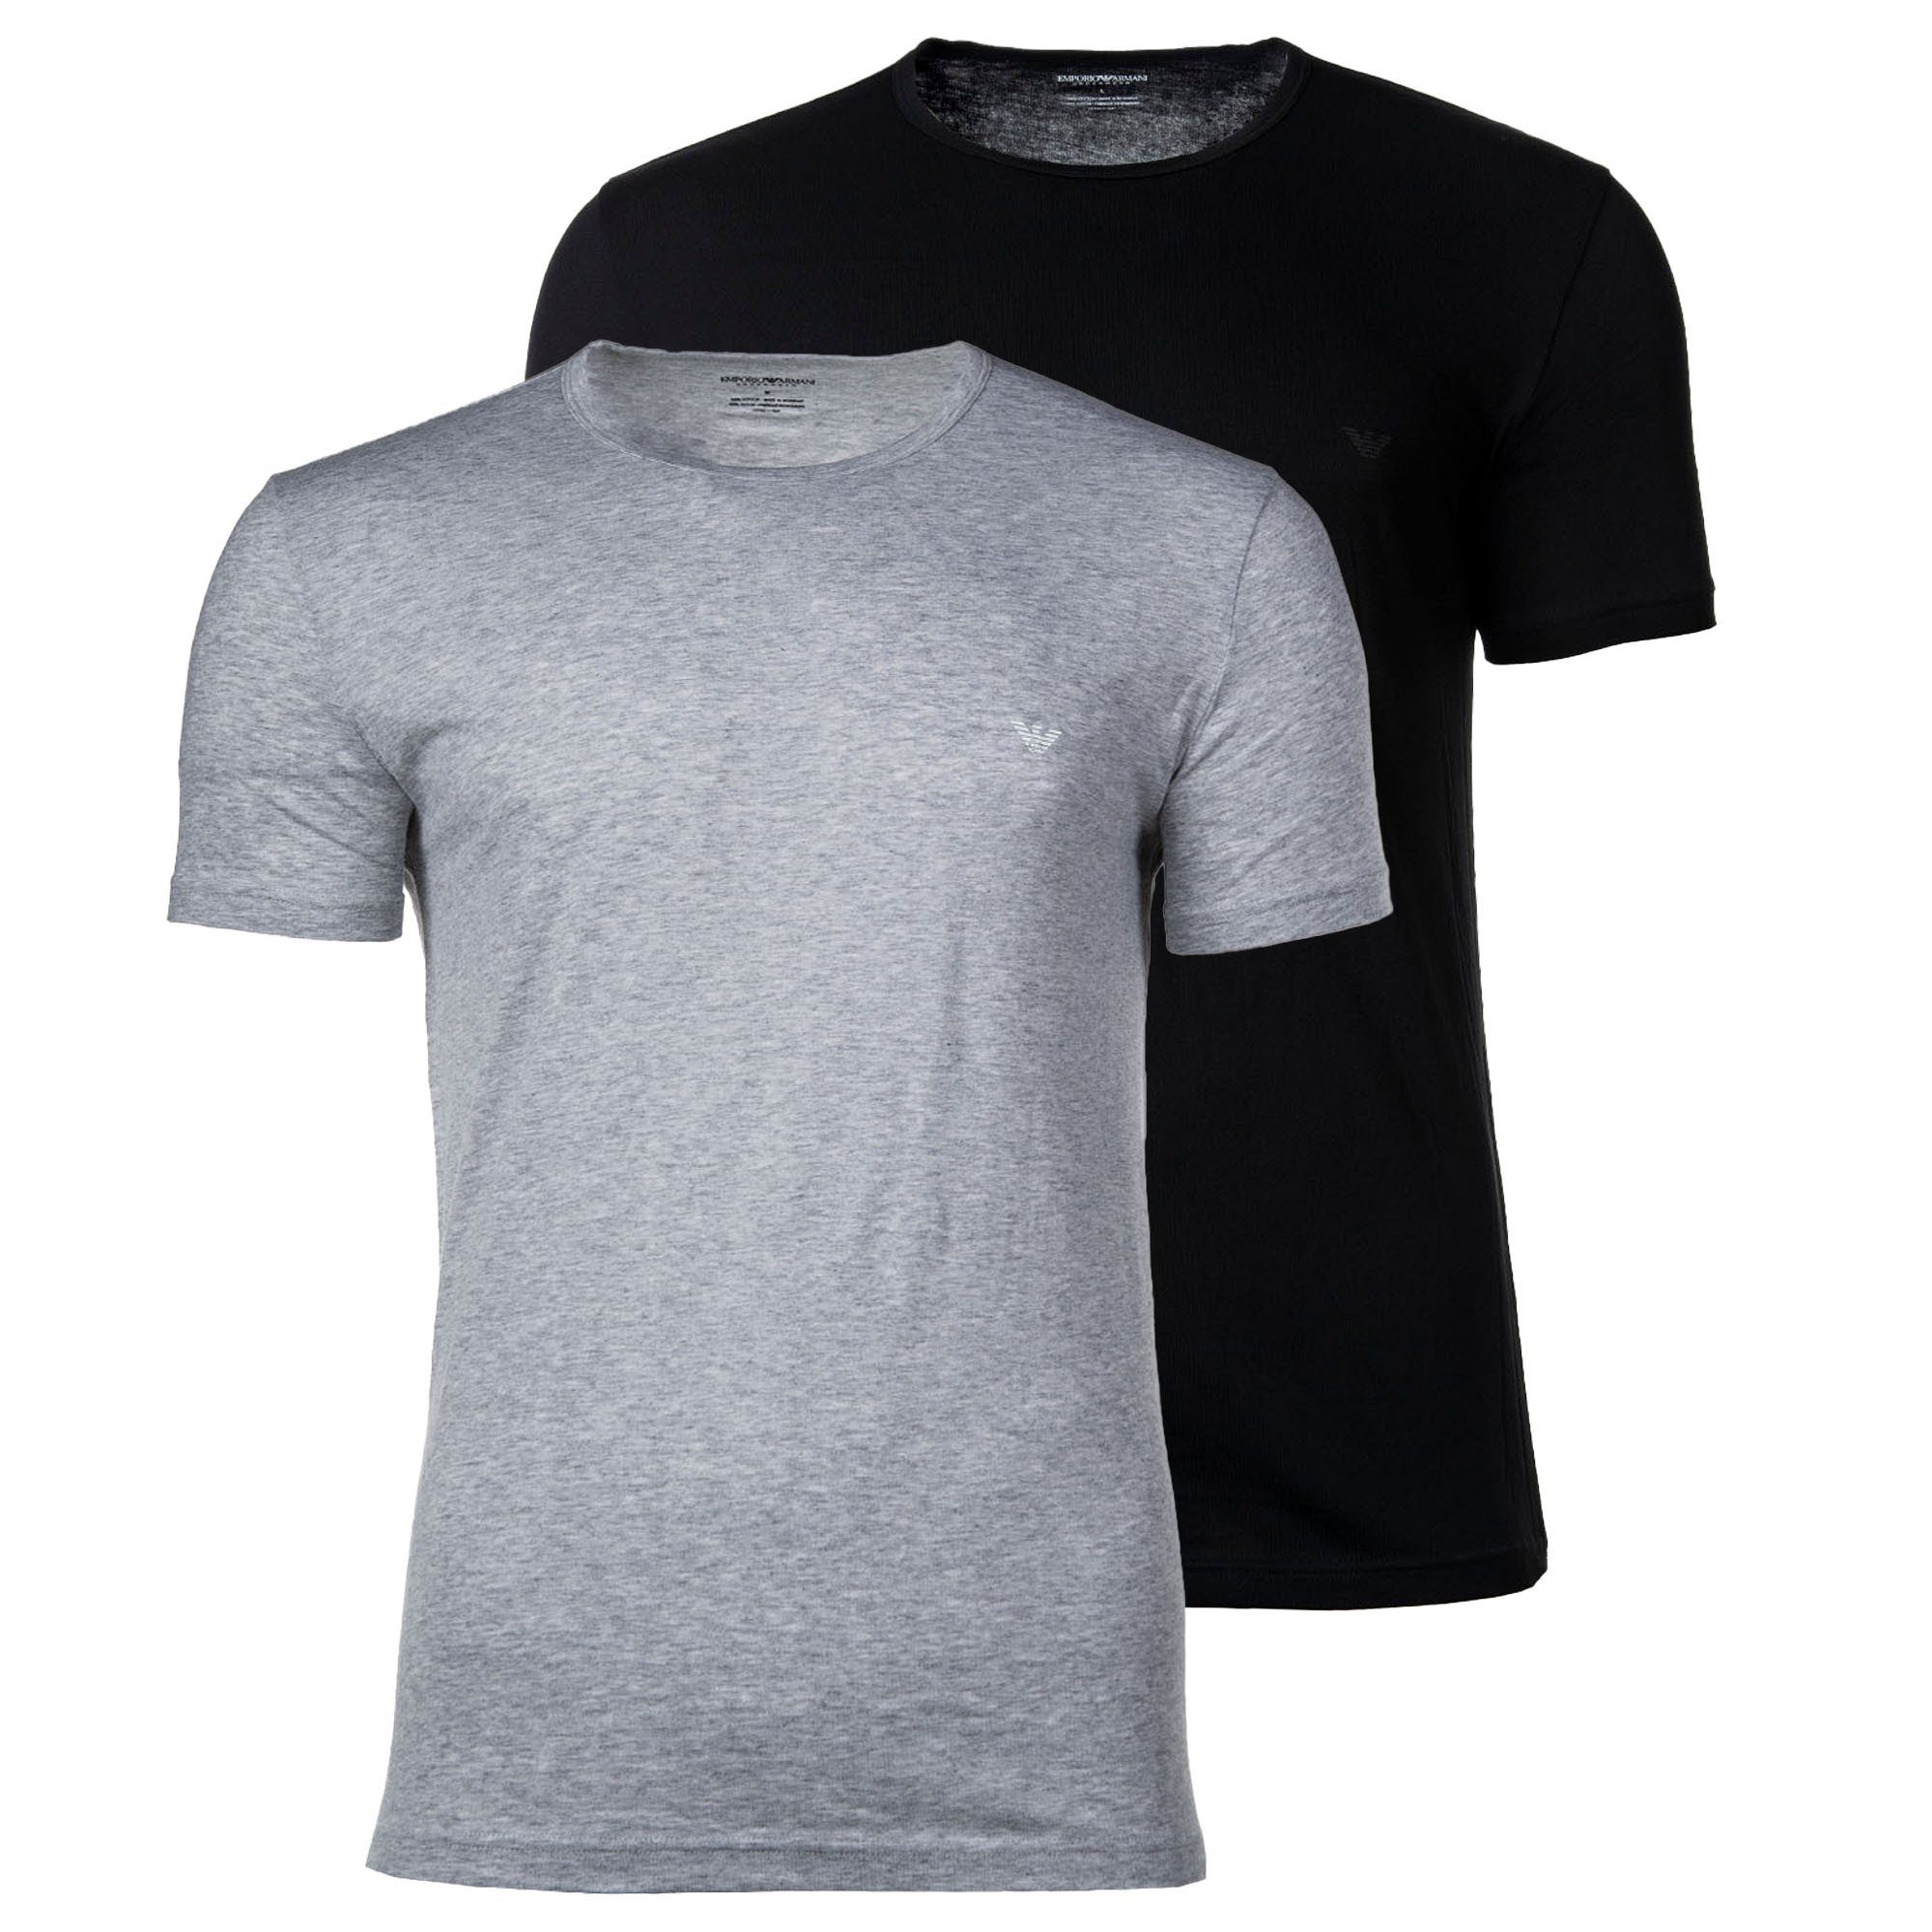 Emporio Armani T-Shirt Herren T-Shirt 2er Pack - Crew Neck, Rundhals Schwarz/Grau